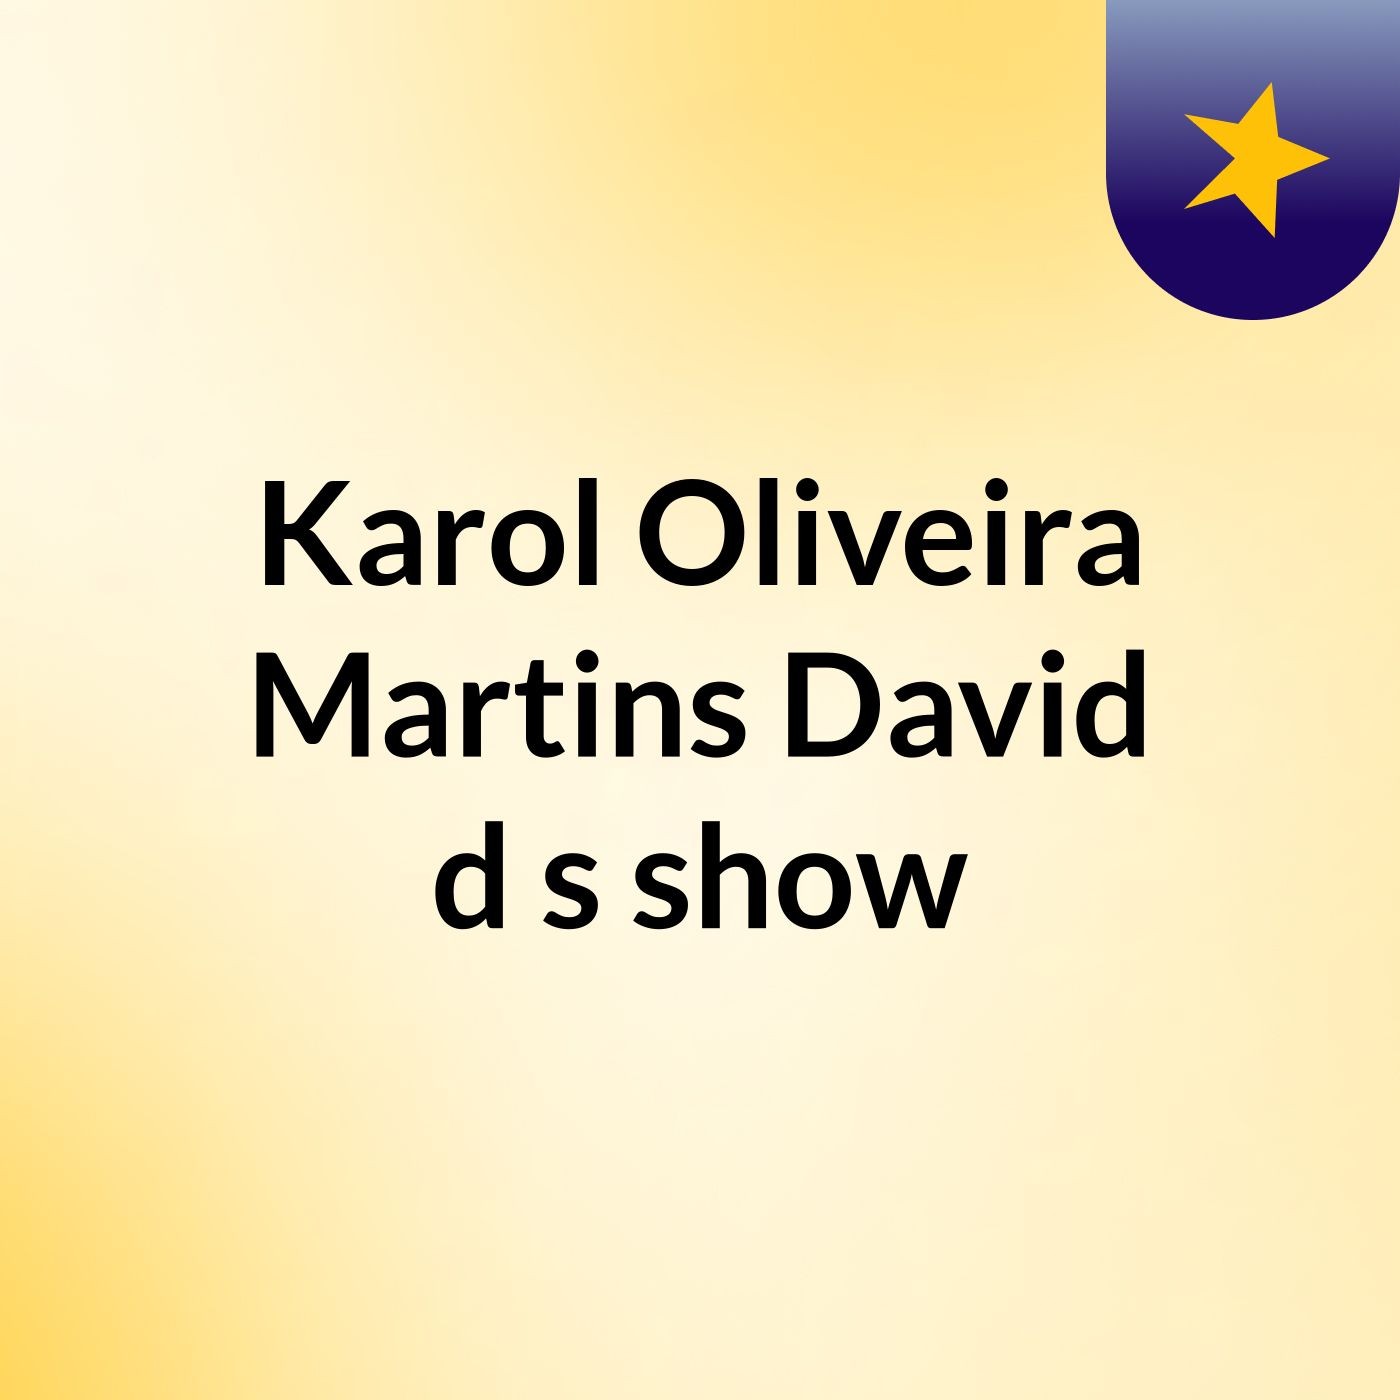 Karol Oliveira Martins David d's show